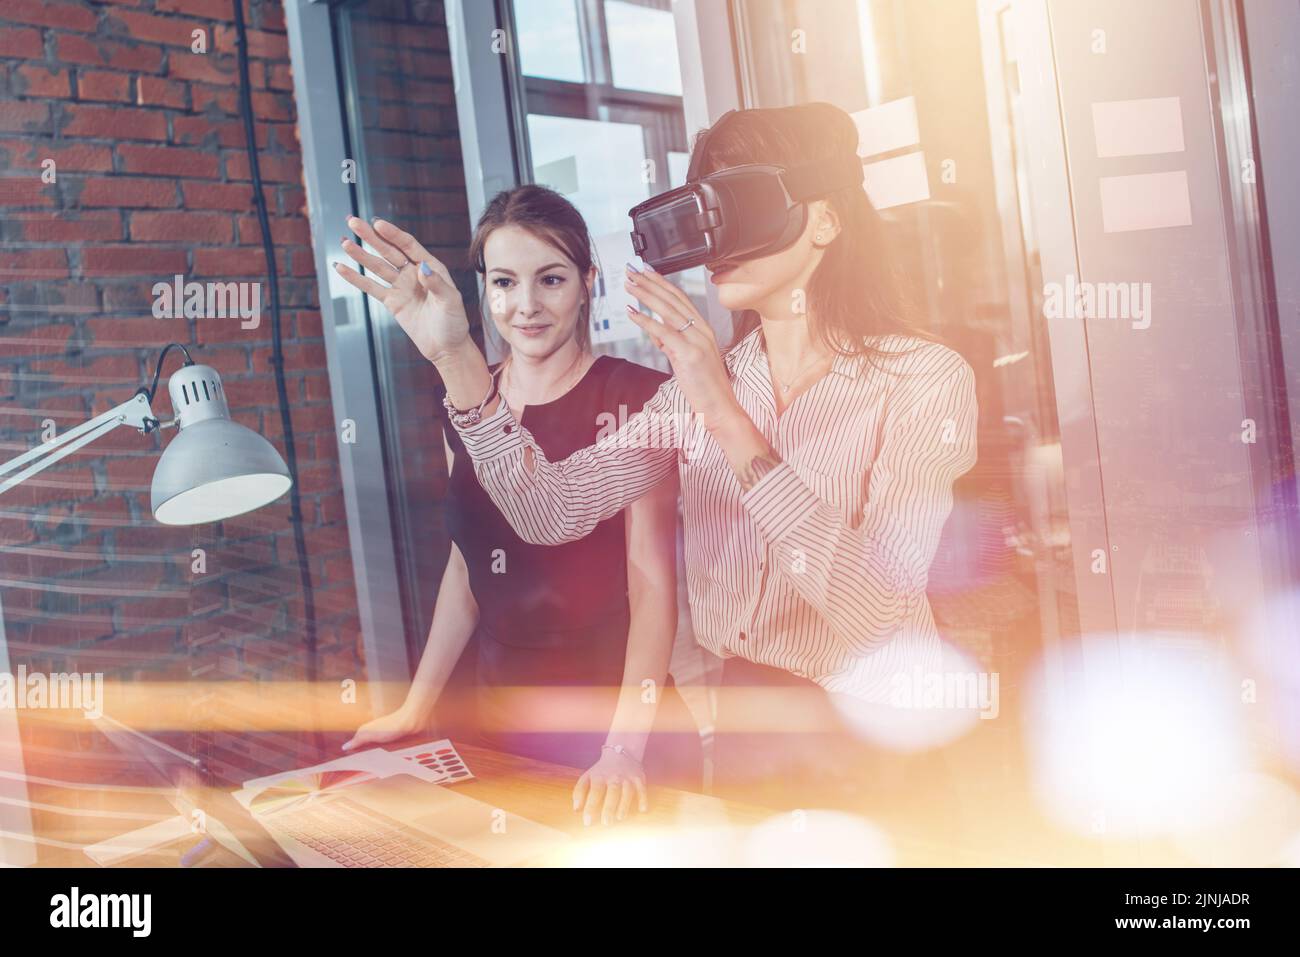 Les travailleuses de bureau s'amusent au travail en regardant 3D vidéos dans des lunettes VR, une femme touchant quelque chose en train de vivre la réalité virtuelle. Banque D'Images